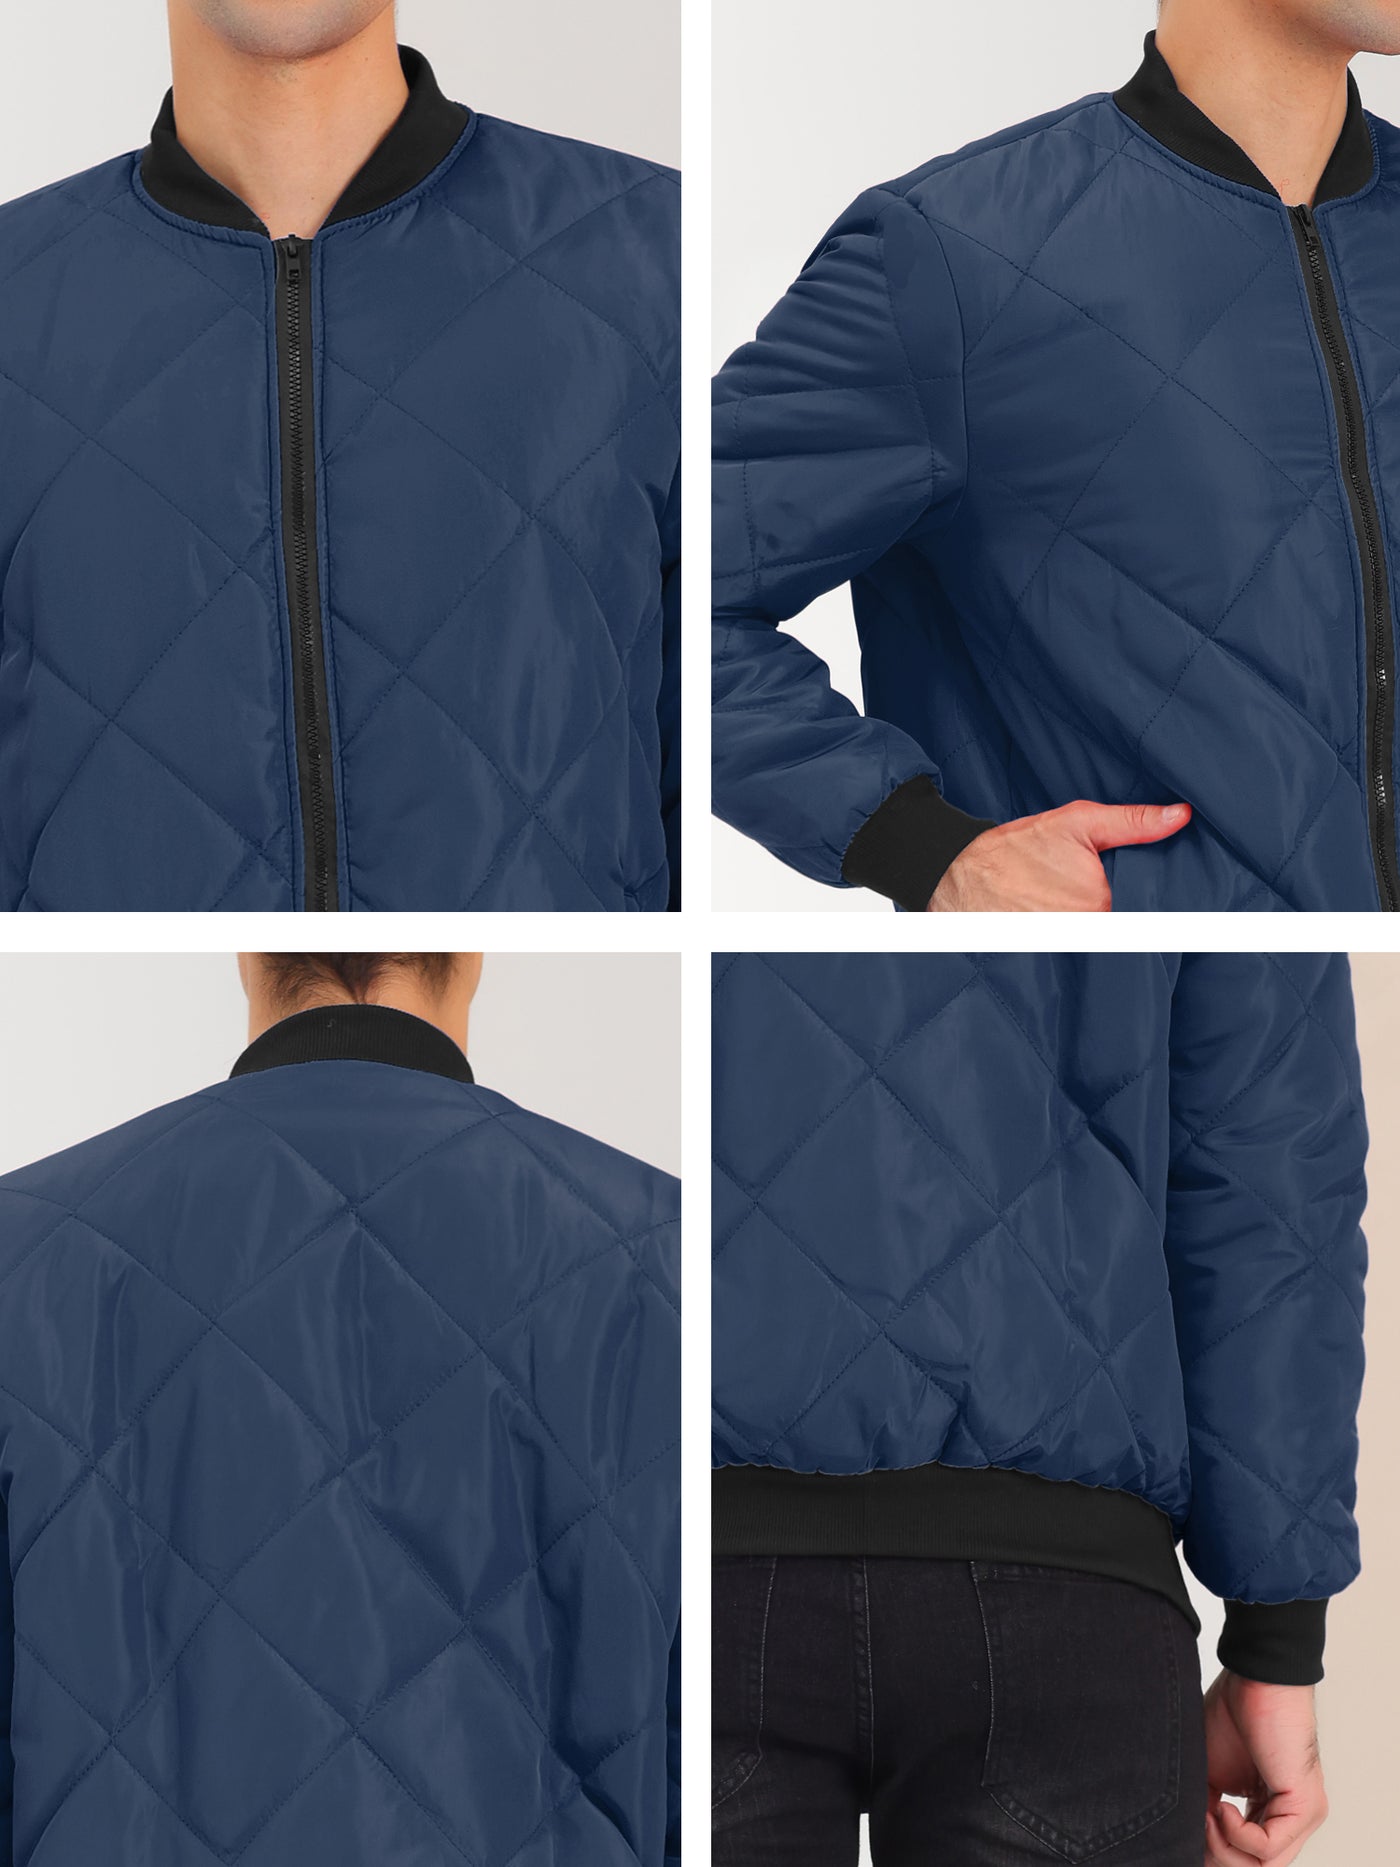 Bublédon Men's Puffer Coat Lightweight Zip Up Quilted Baseball Bomber Jacket